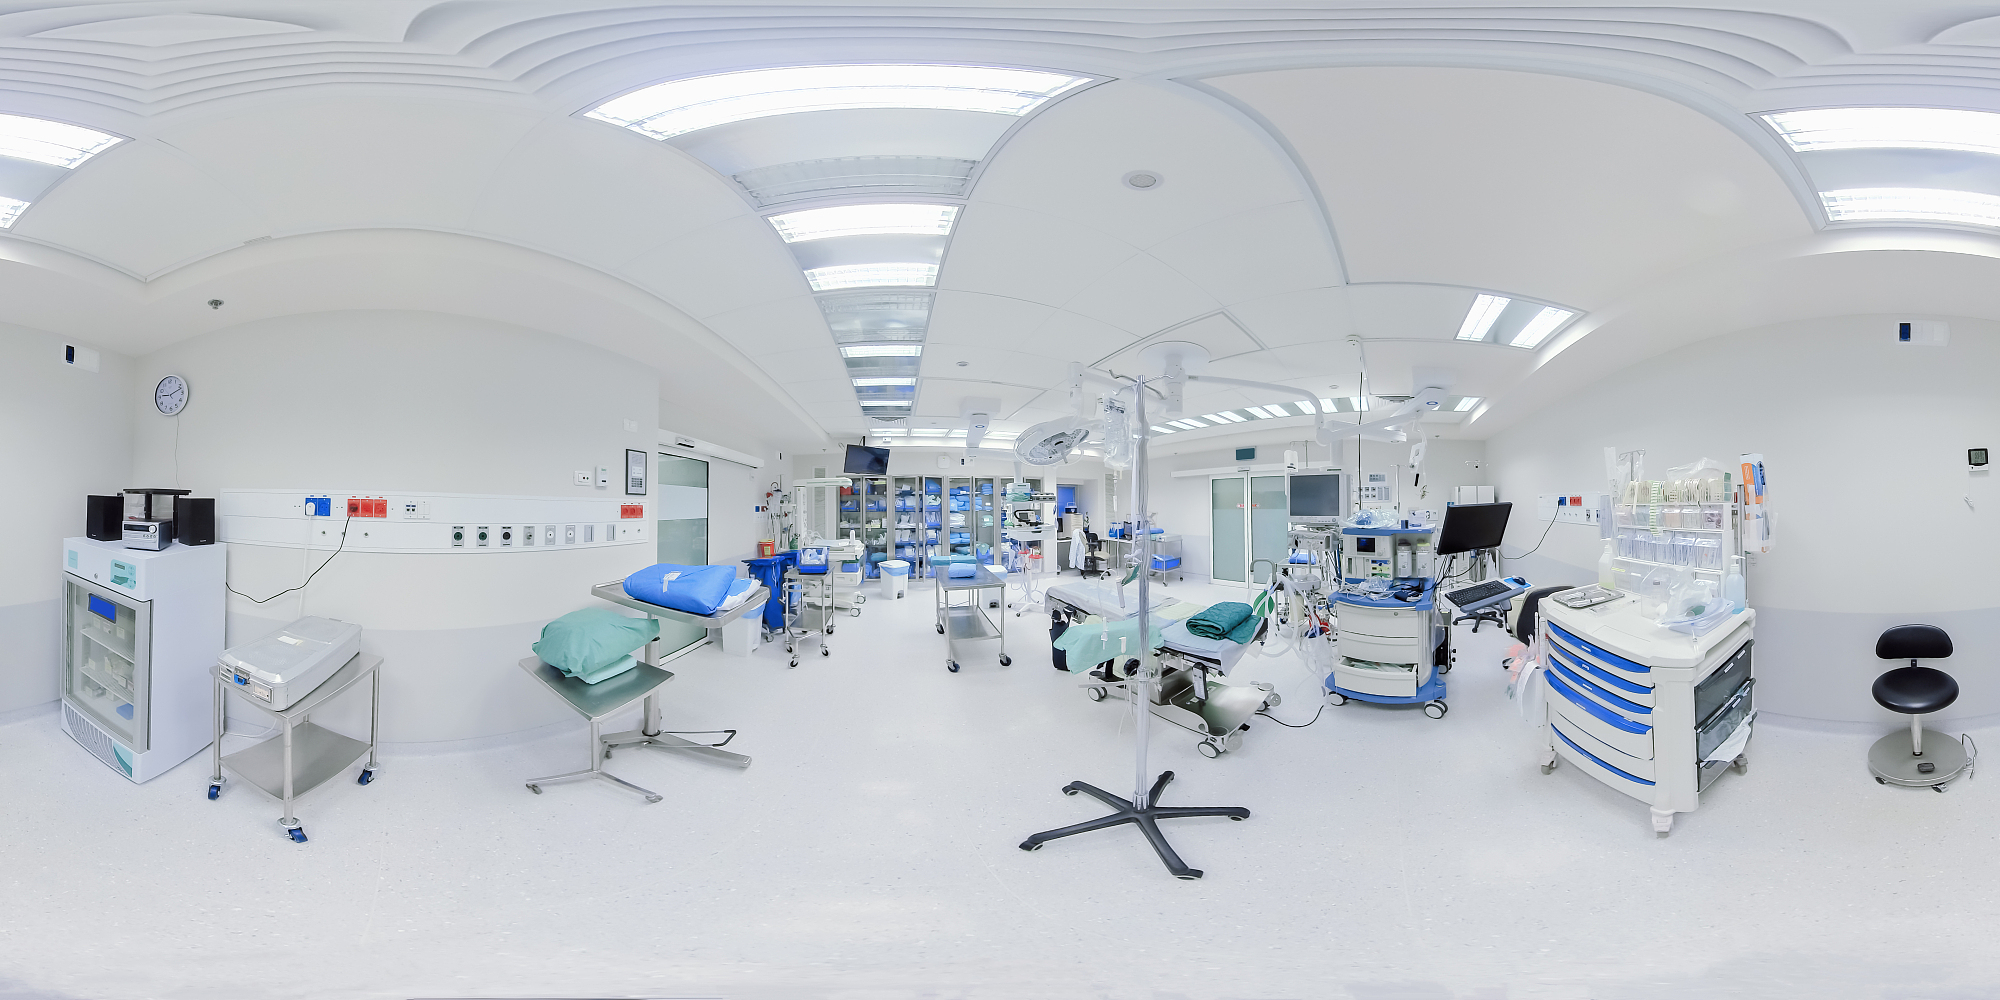 清空医院的新手术室图片下载